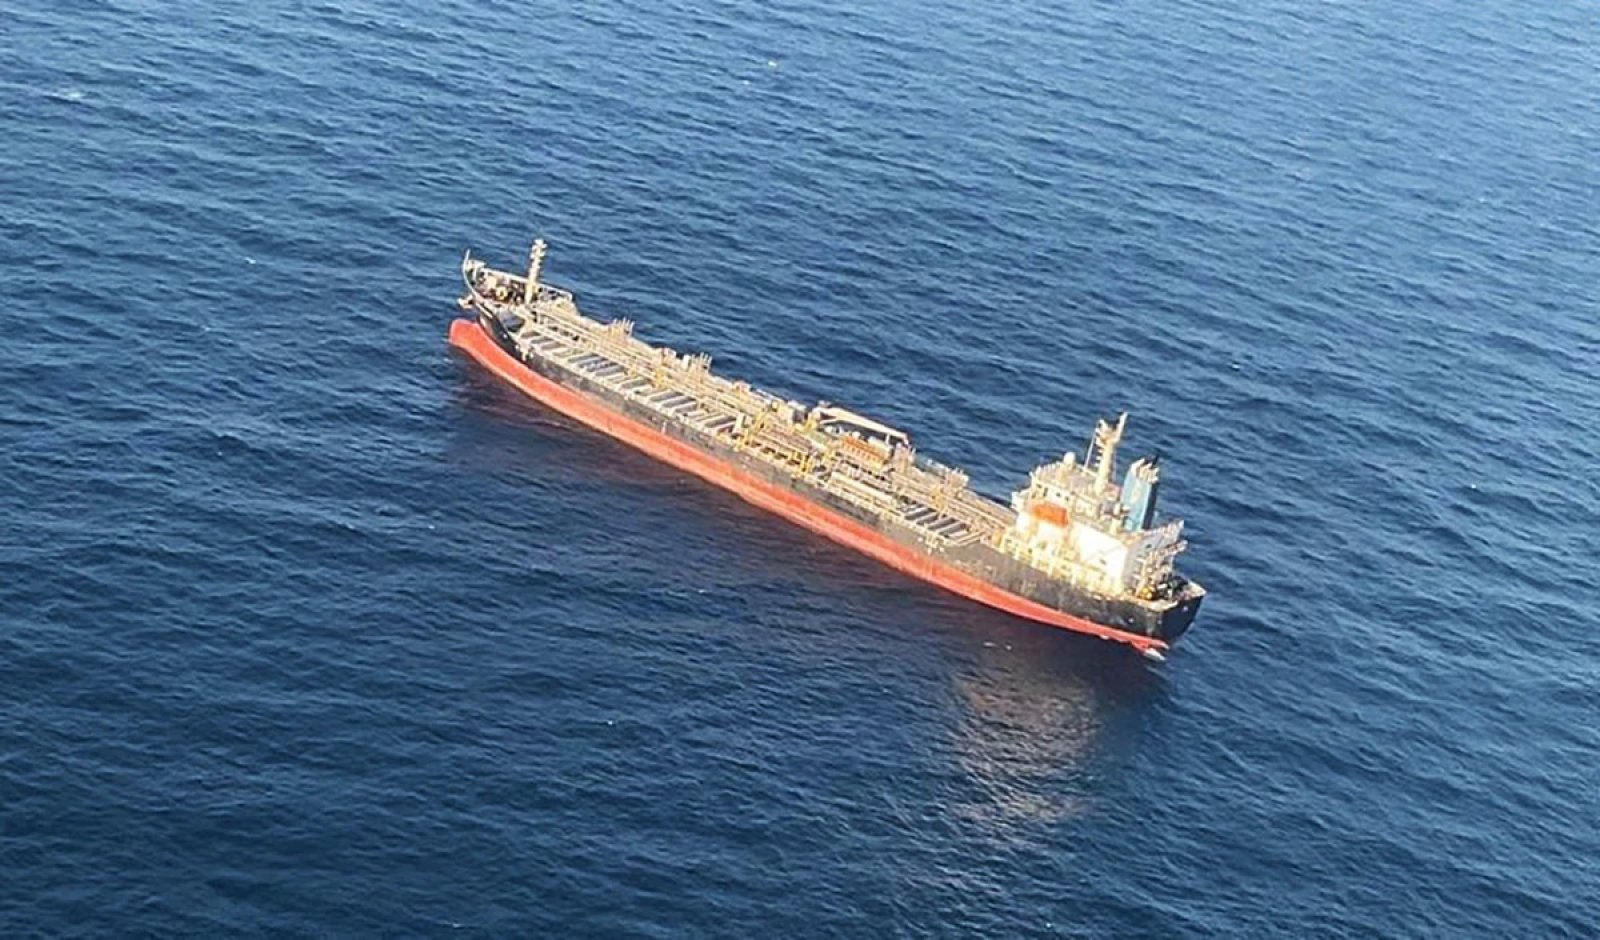 आईएनएस चेन्नई सोमालिया तट के पास अपहृत जहाज की ओर बढ़ रहा है